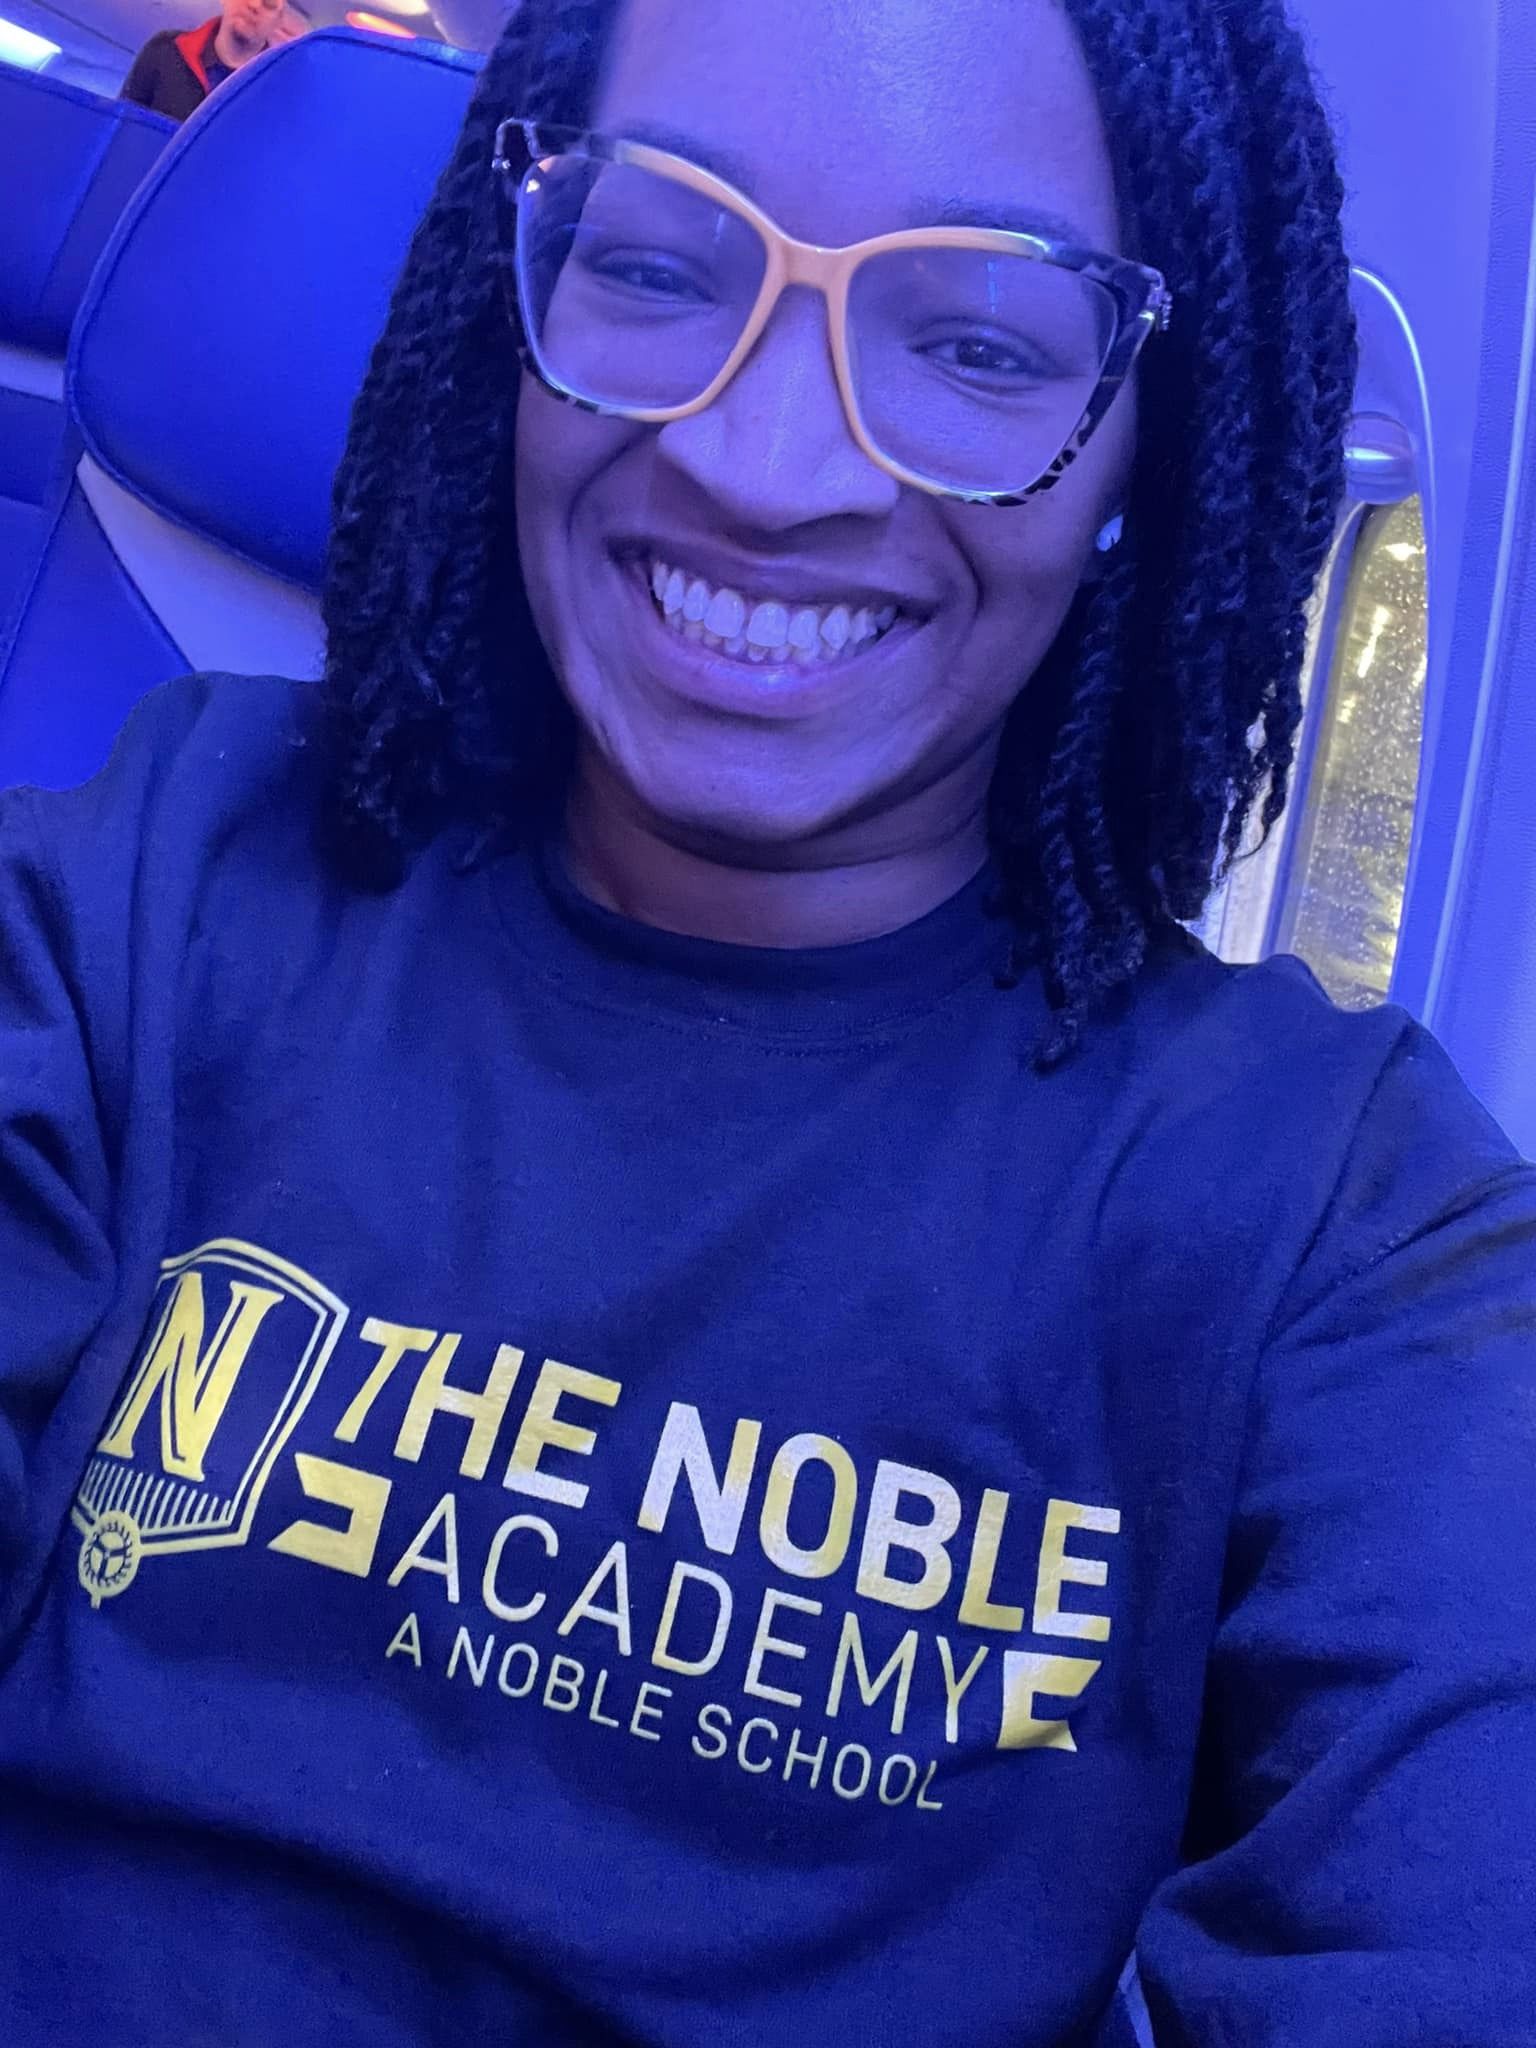 Pinkston smiling on a plane